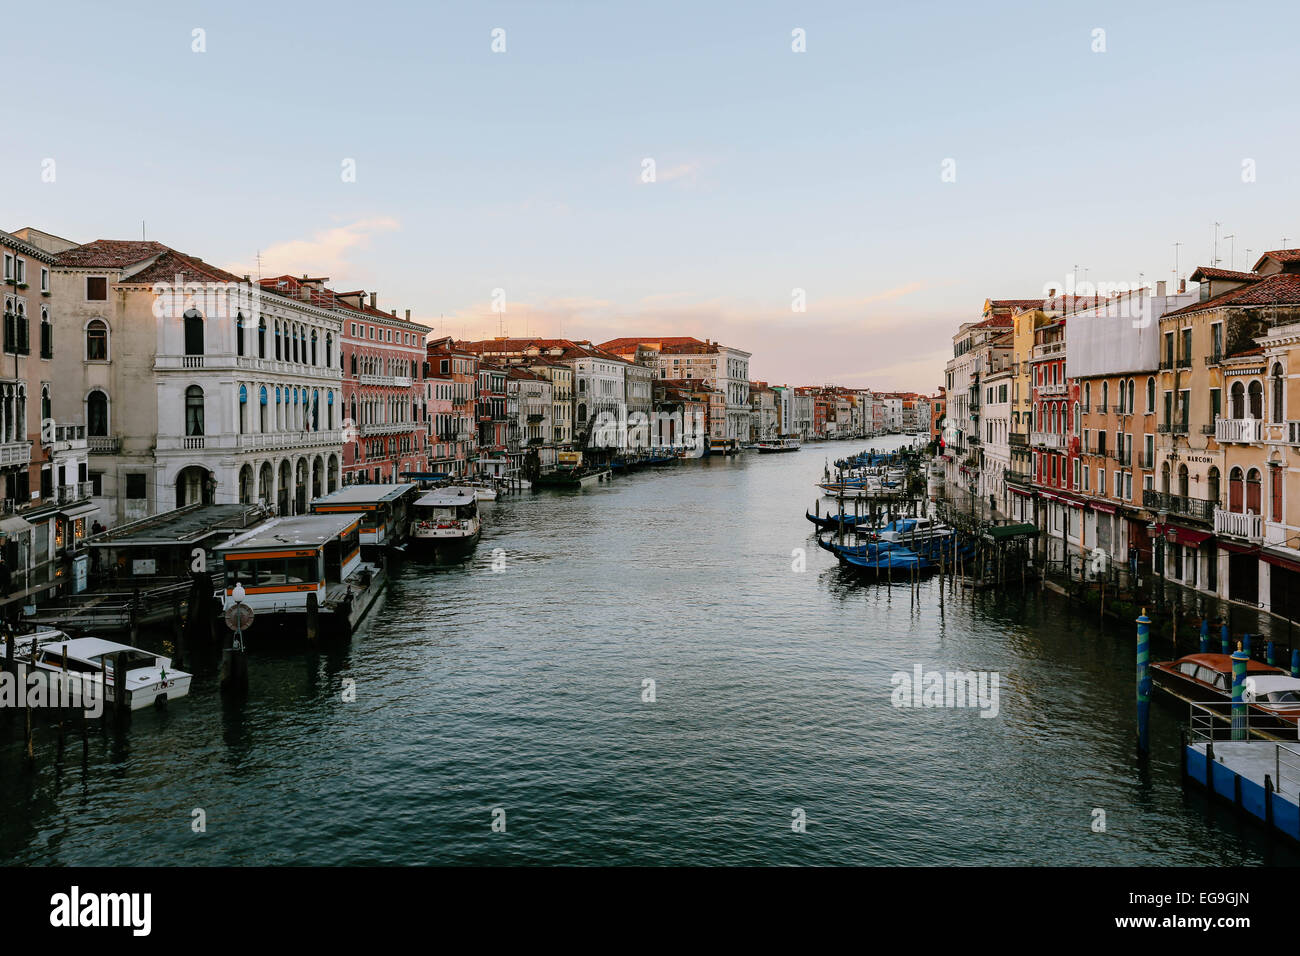 Italia, Venecia, temprano por la mañana vista desde el Puente de Rialto Foto de stock